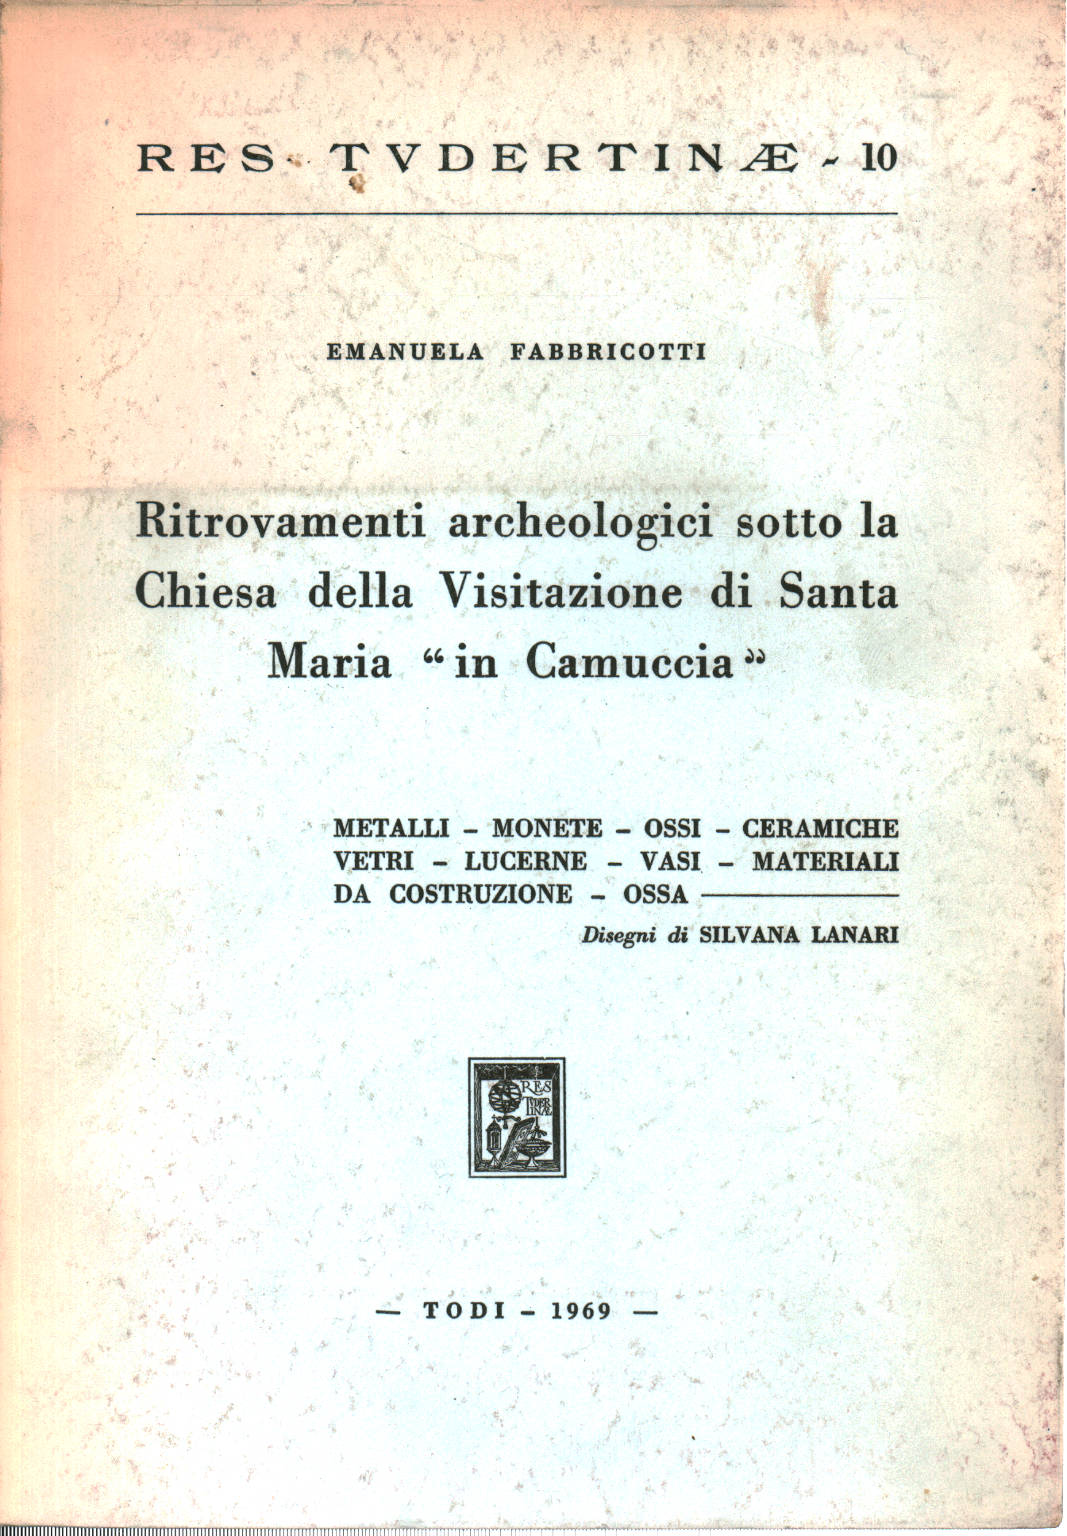 Archäologische Funde unter der Kirche der VI., Emanuela Fabbricotti